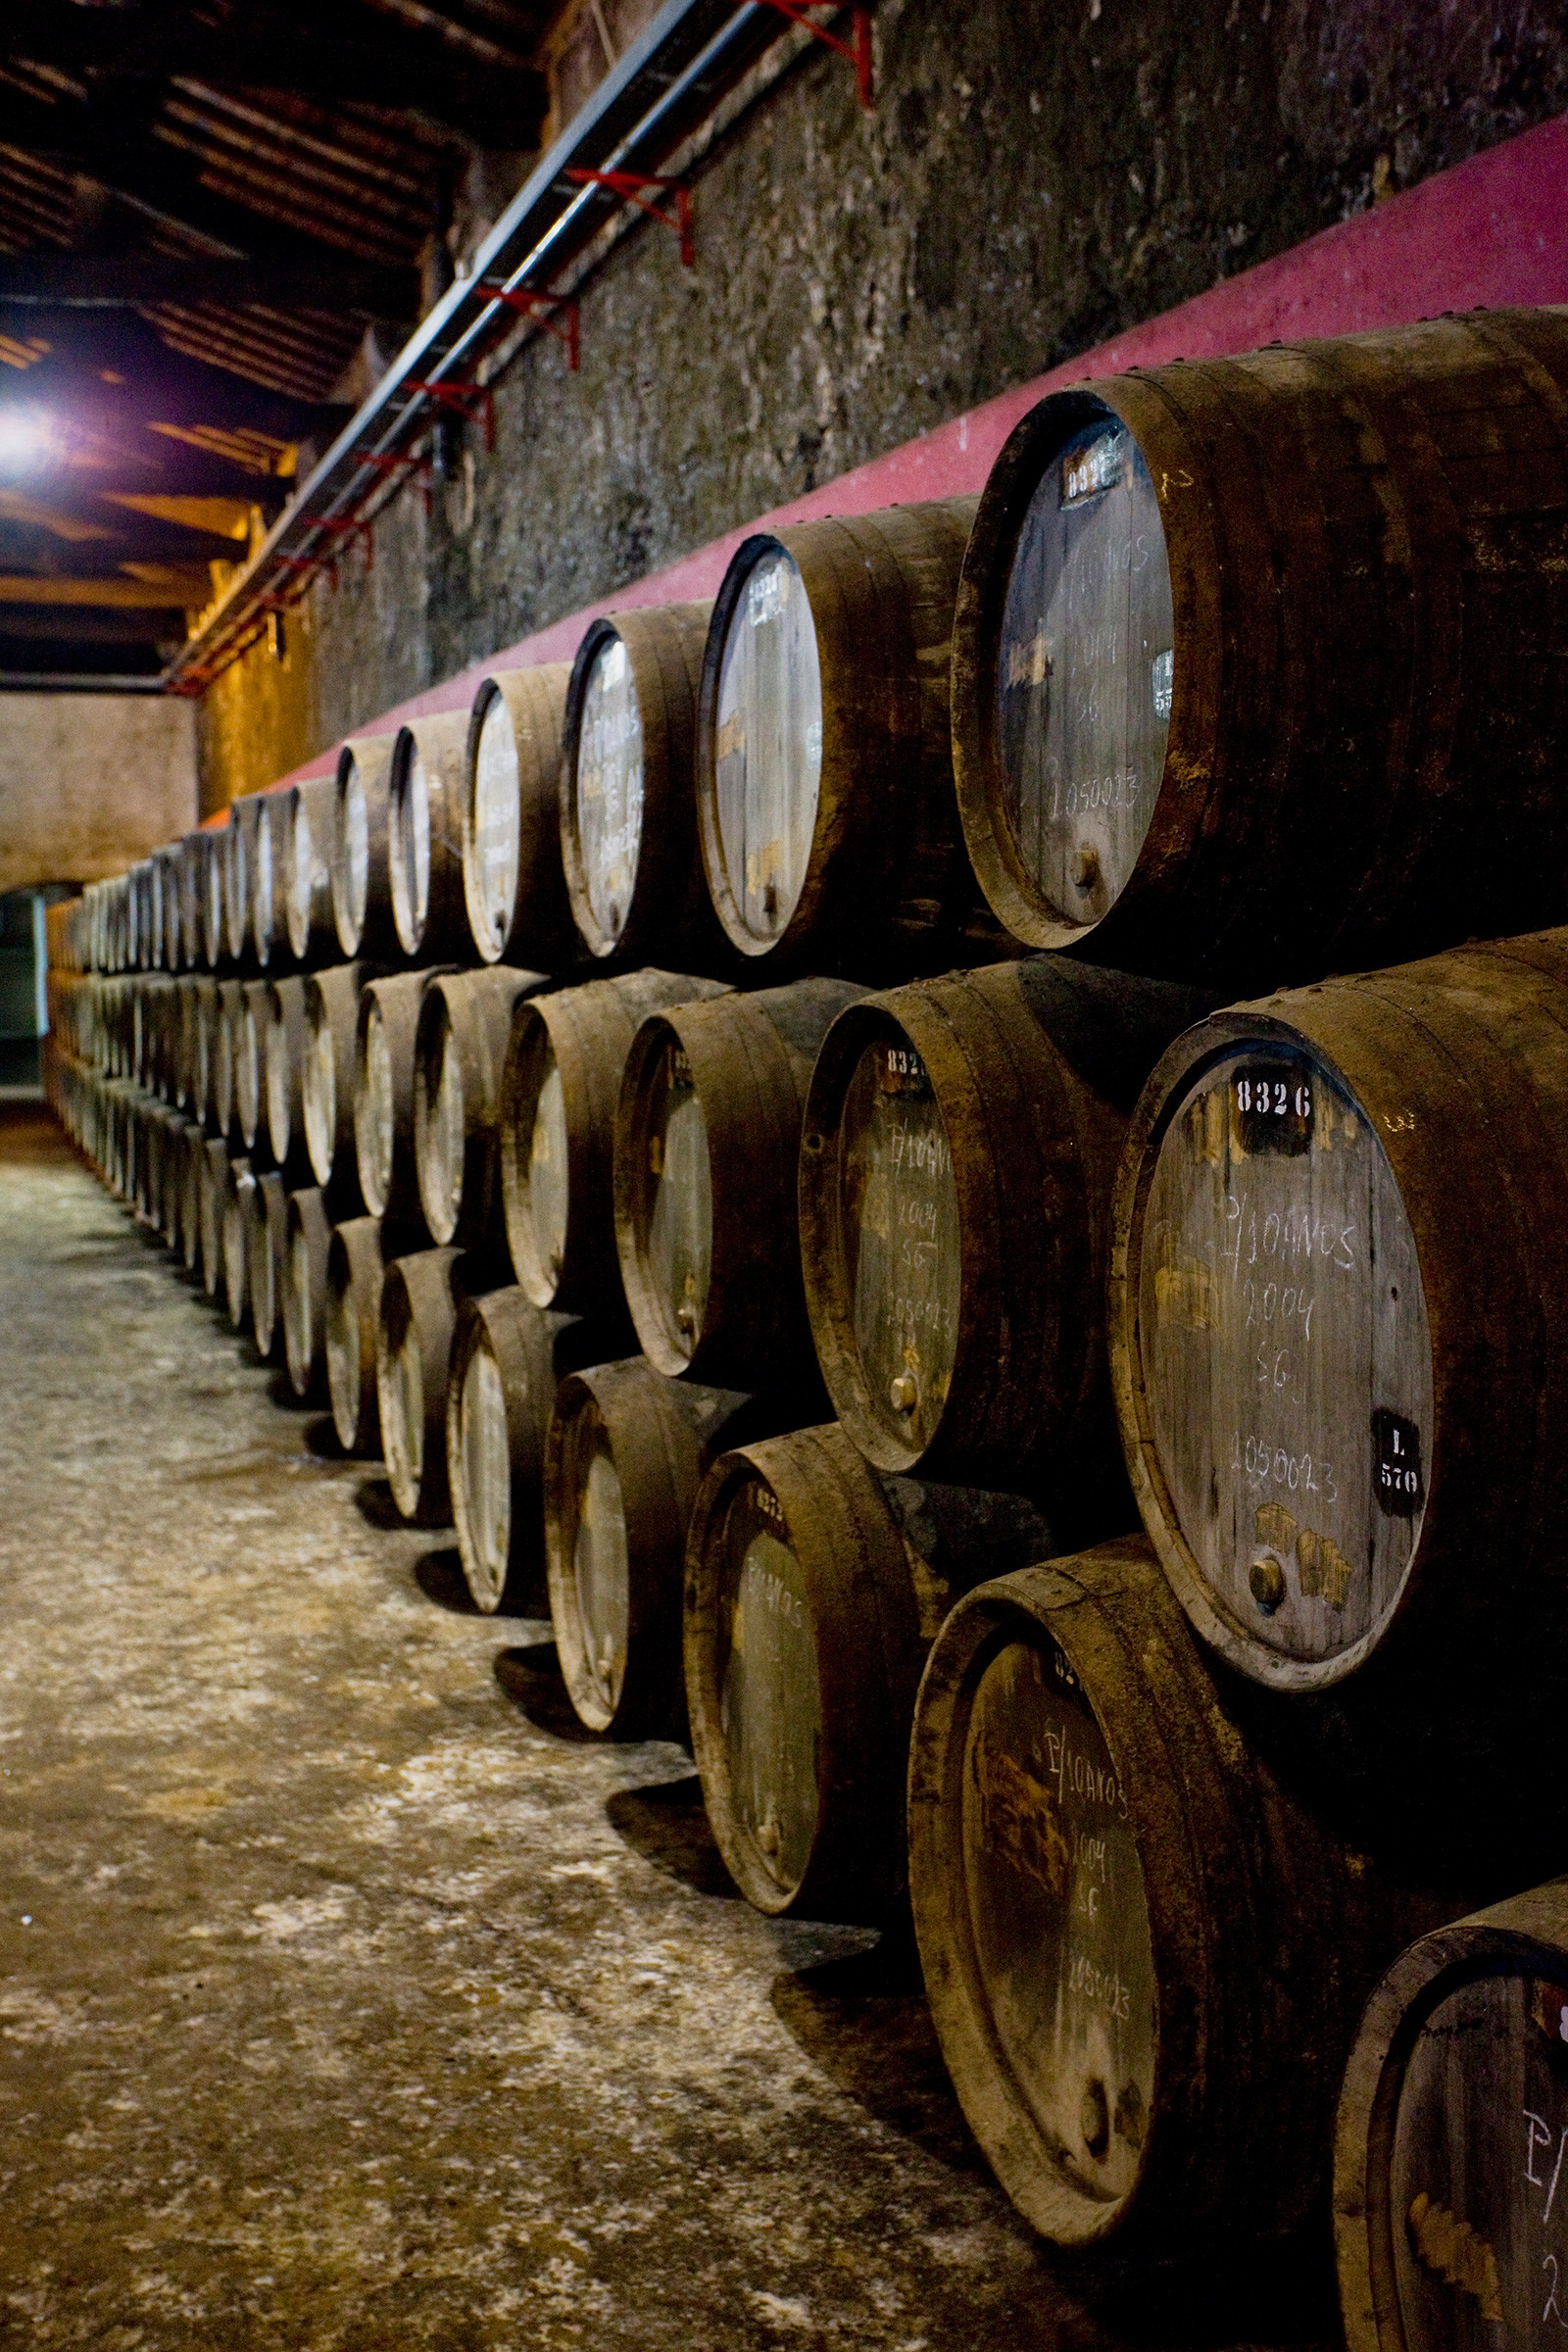 Wine barrels in a winery